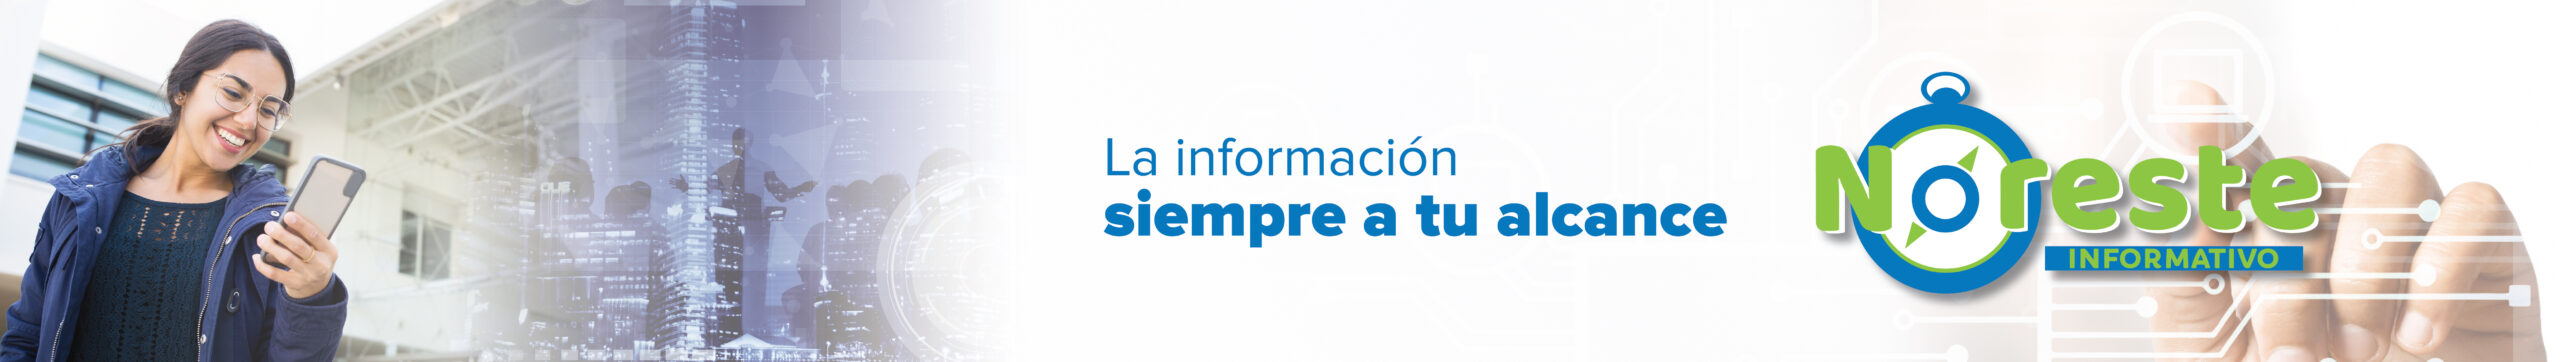 Noreste Informativo – www.elnoreste.mx